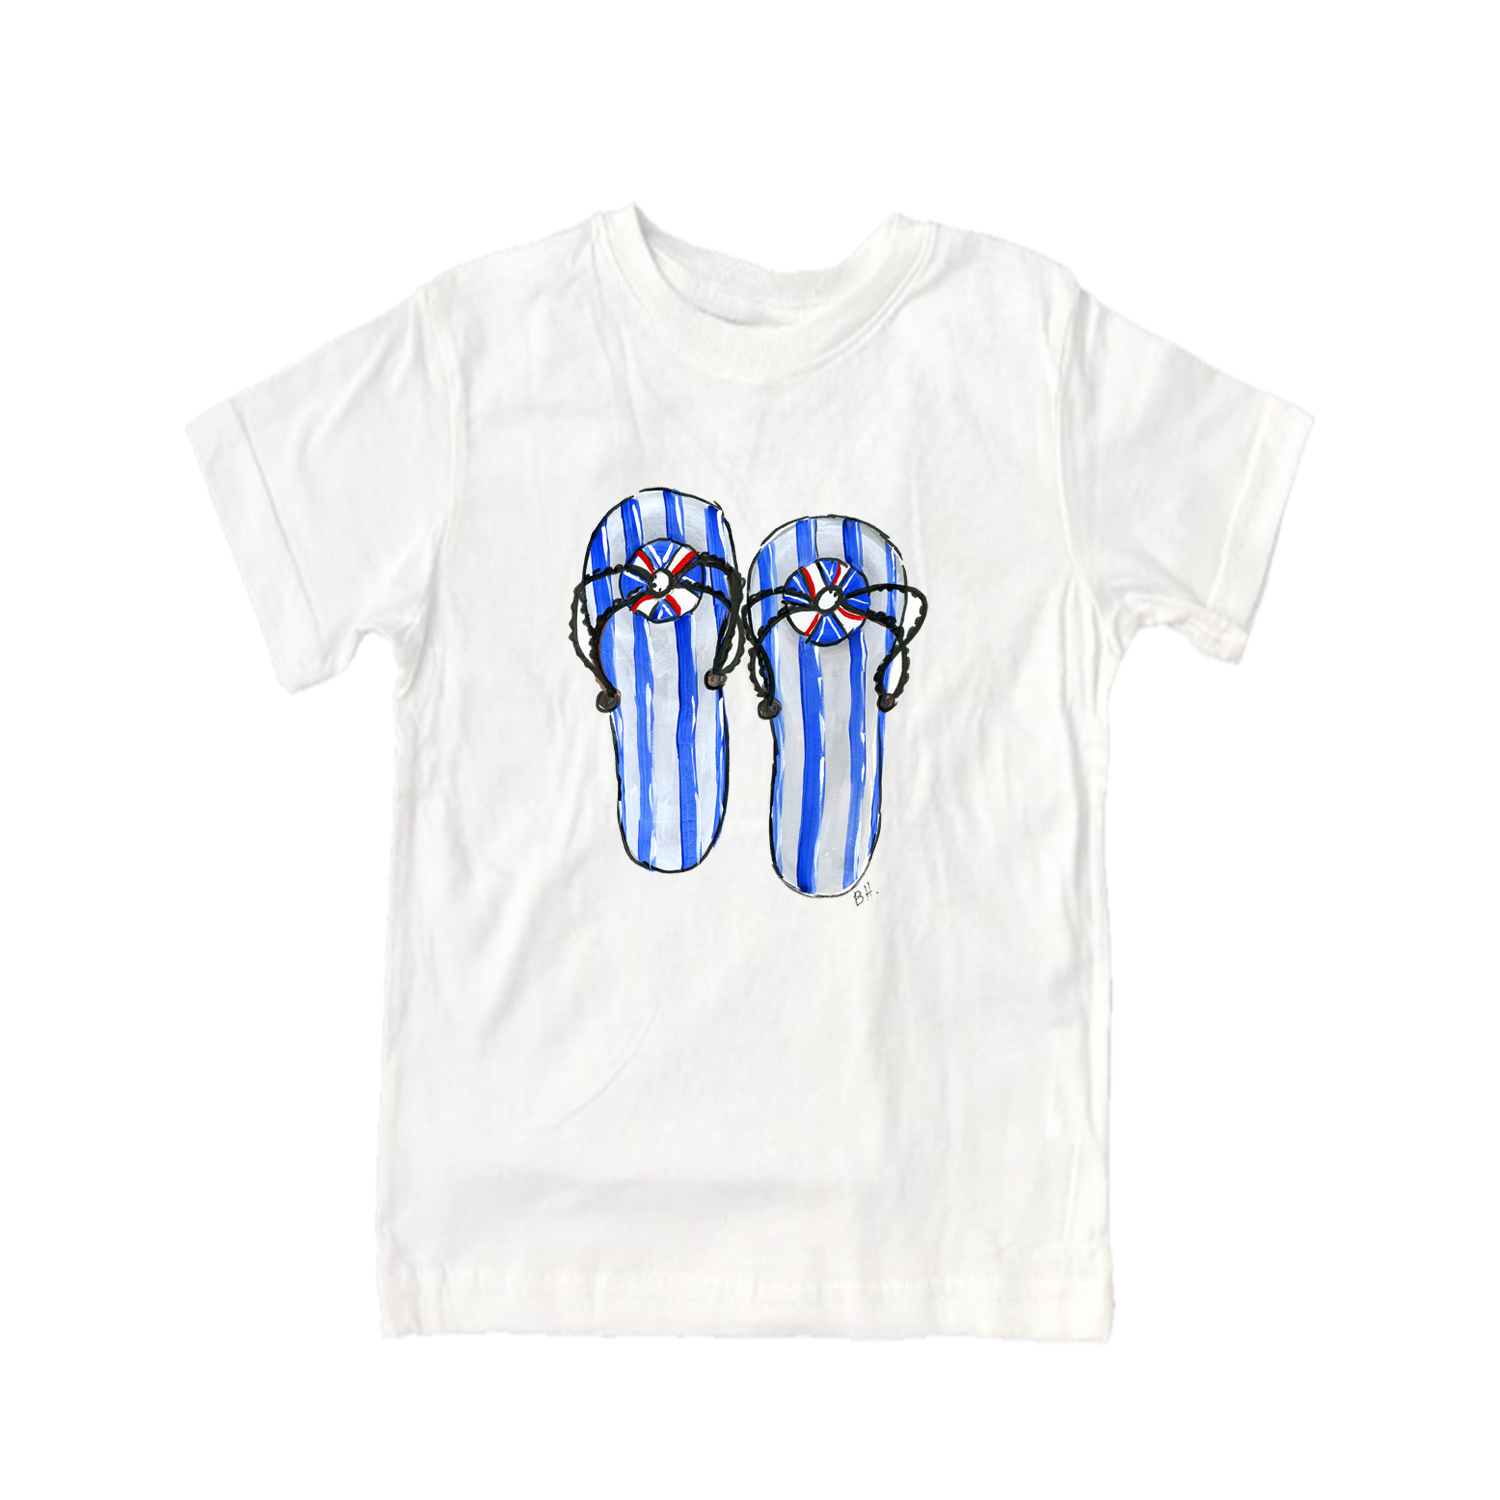 Cotton Tee Shirt Short Sleeve 873 Blue Flip Flops